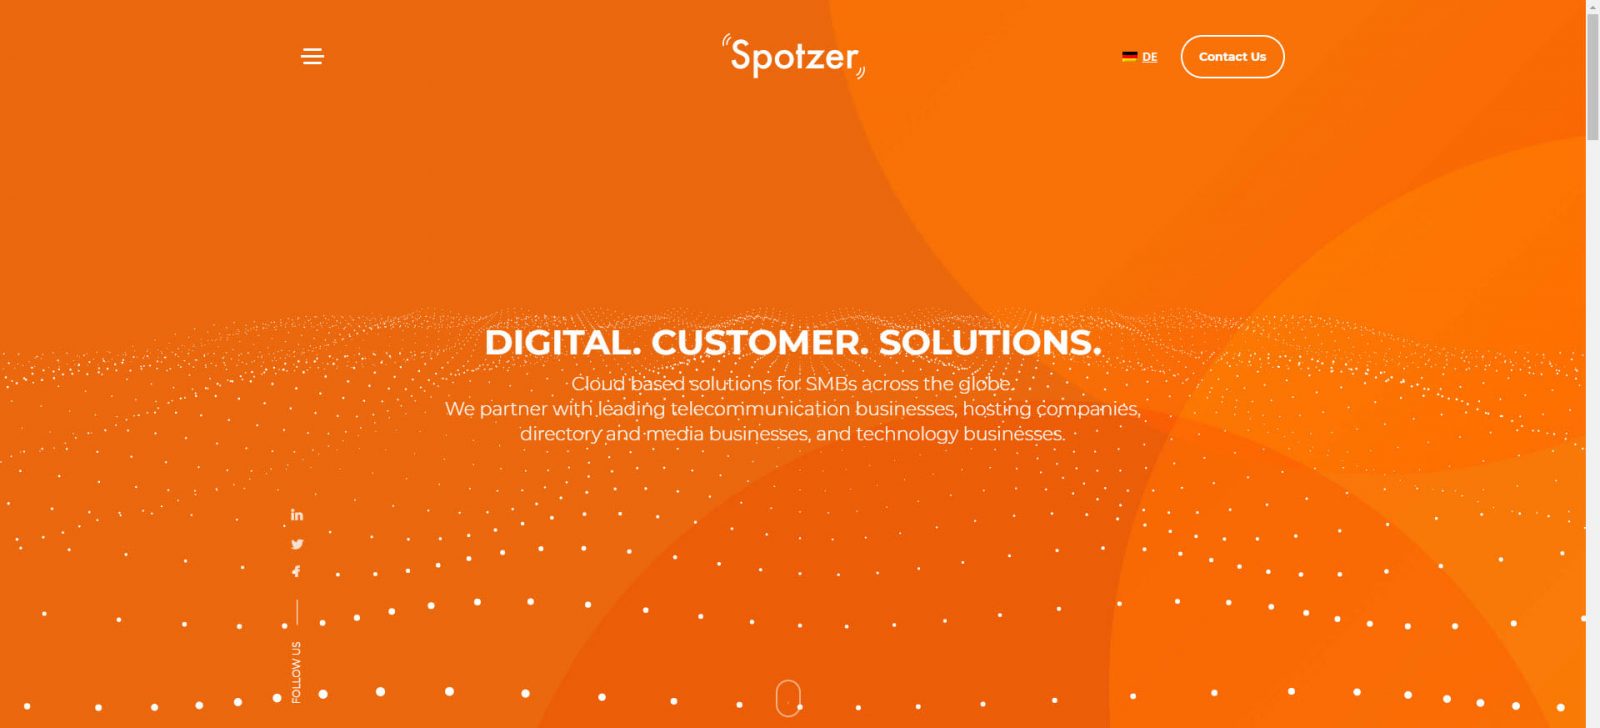 Spotzer Media - Fullsize 1